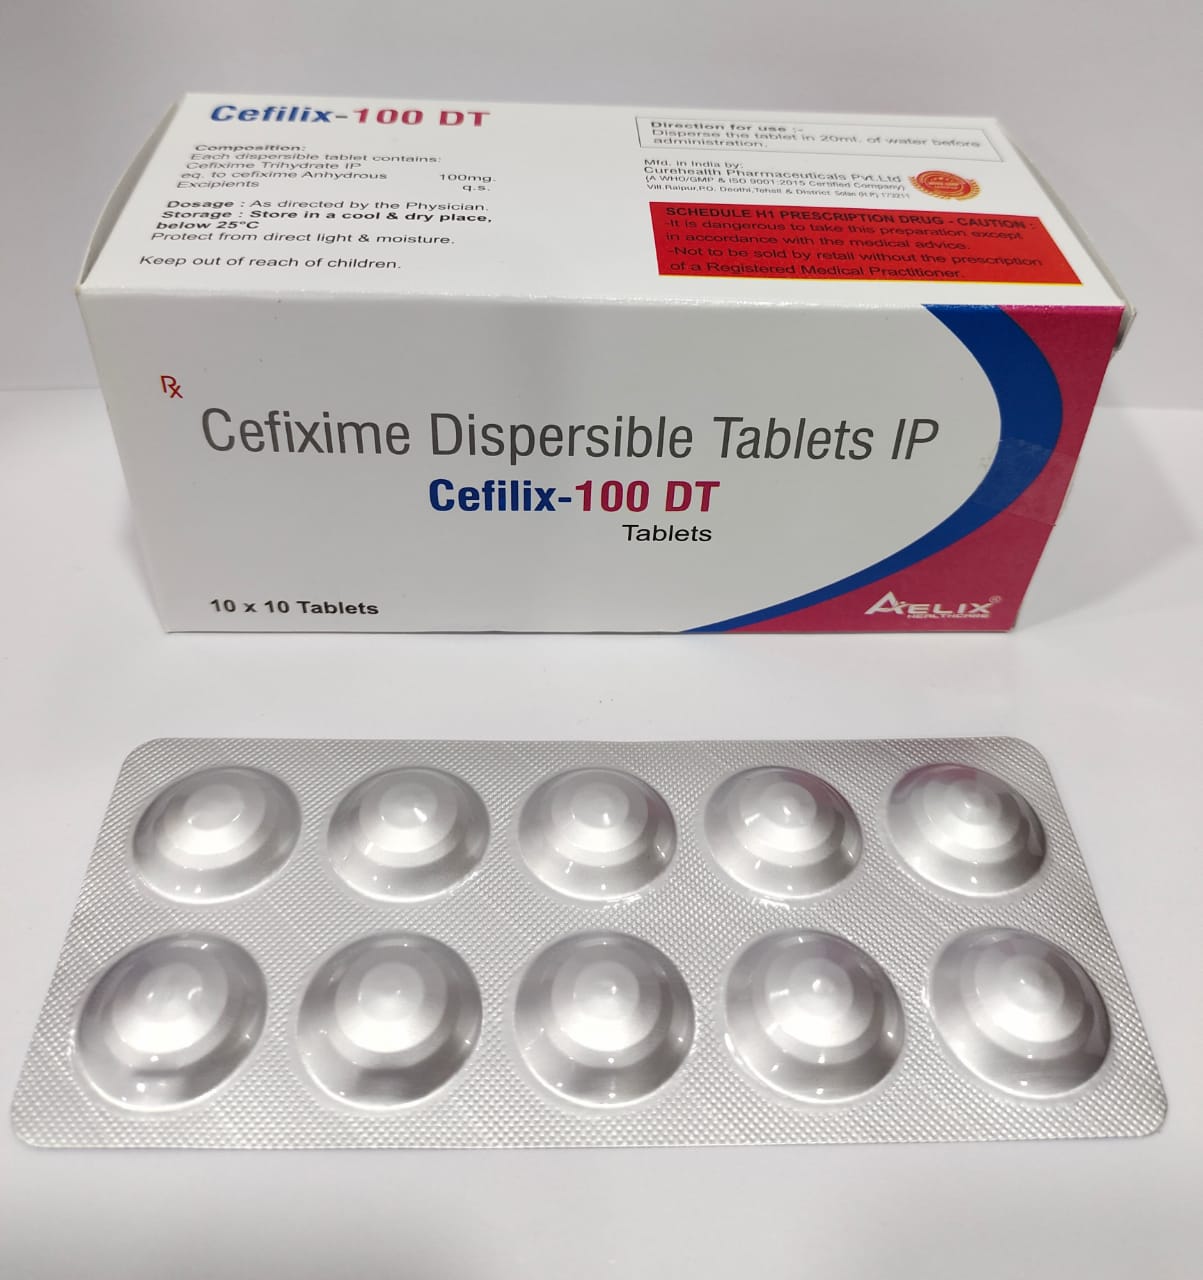 Cefilix-100 DT Tablets